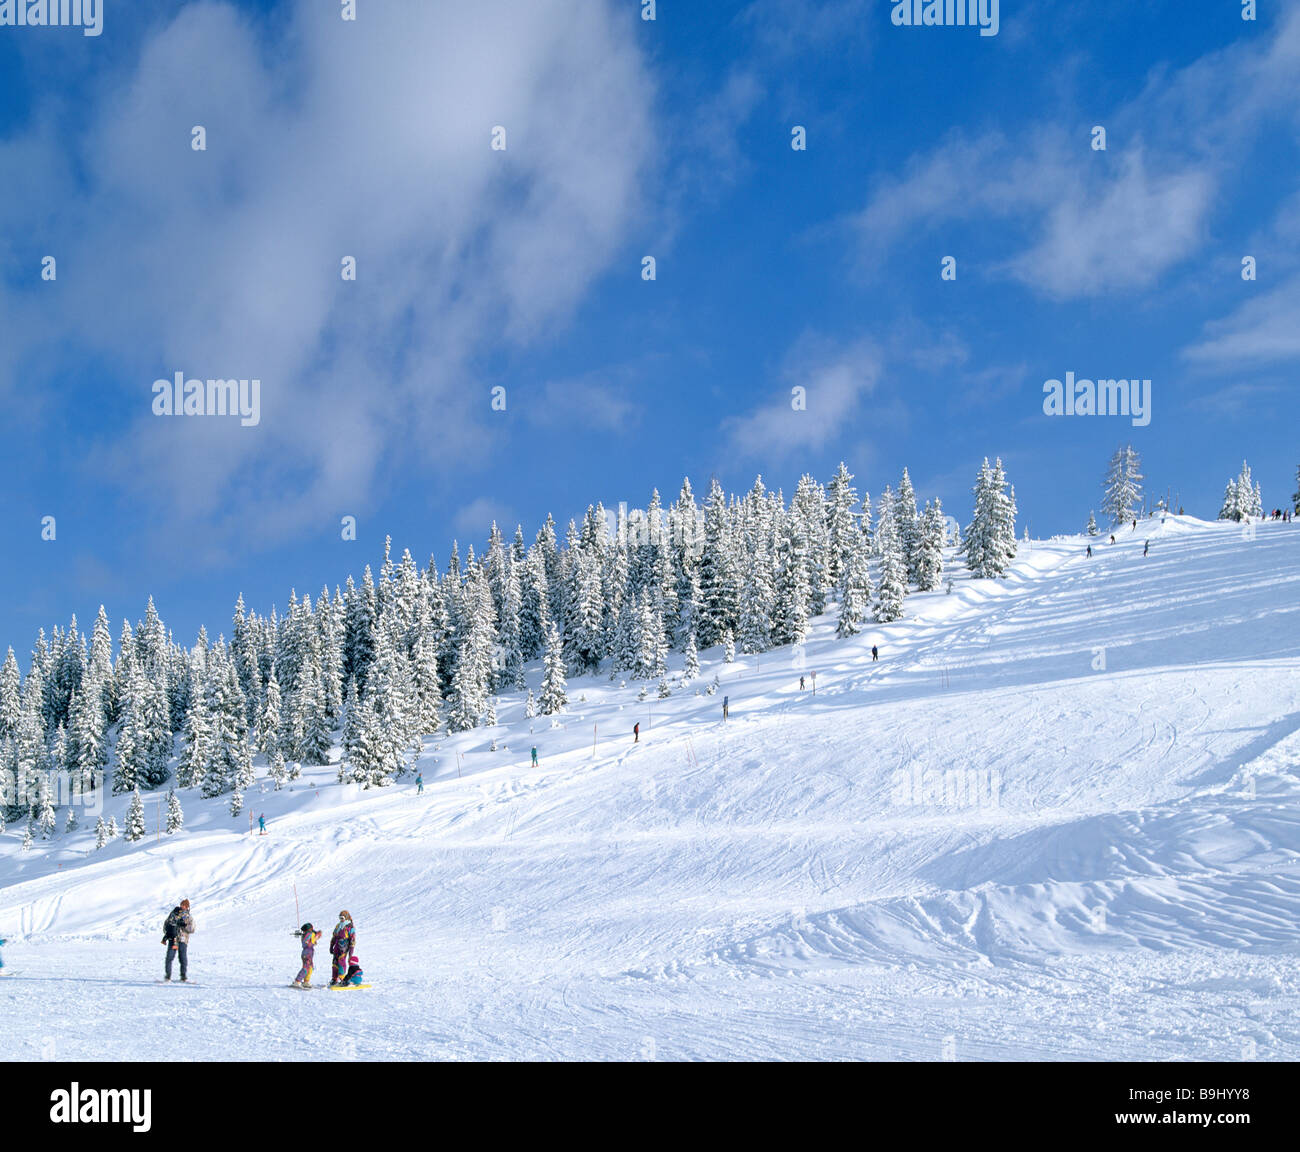 La neige paysage d'hiver, ski, ski, neige fraîche, Salzburger Land, Autriche Banque D'Images